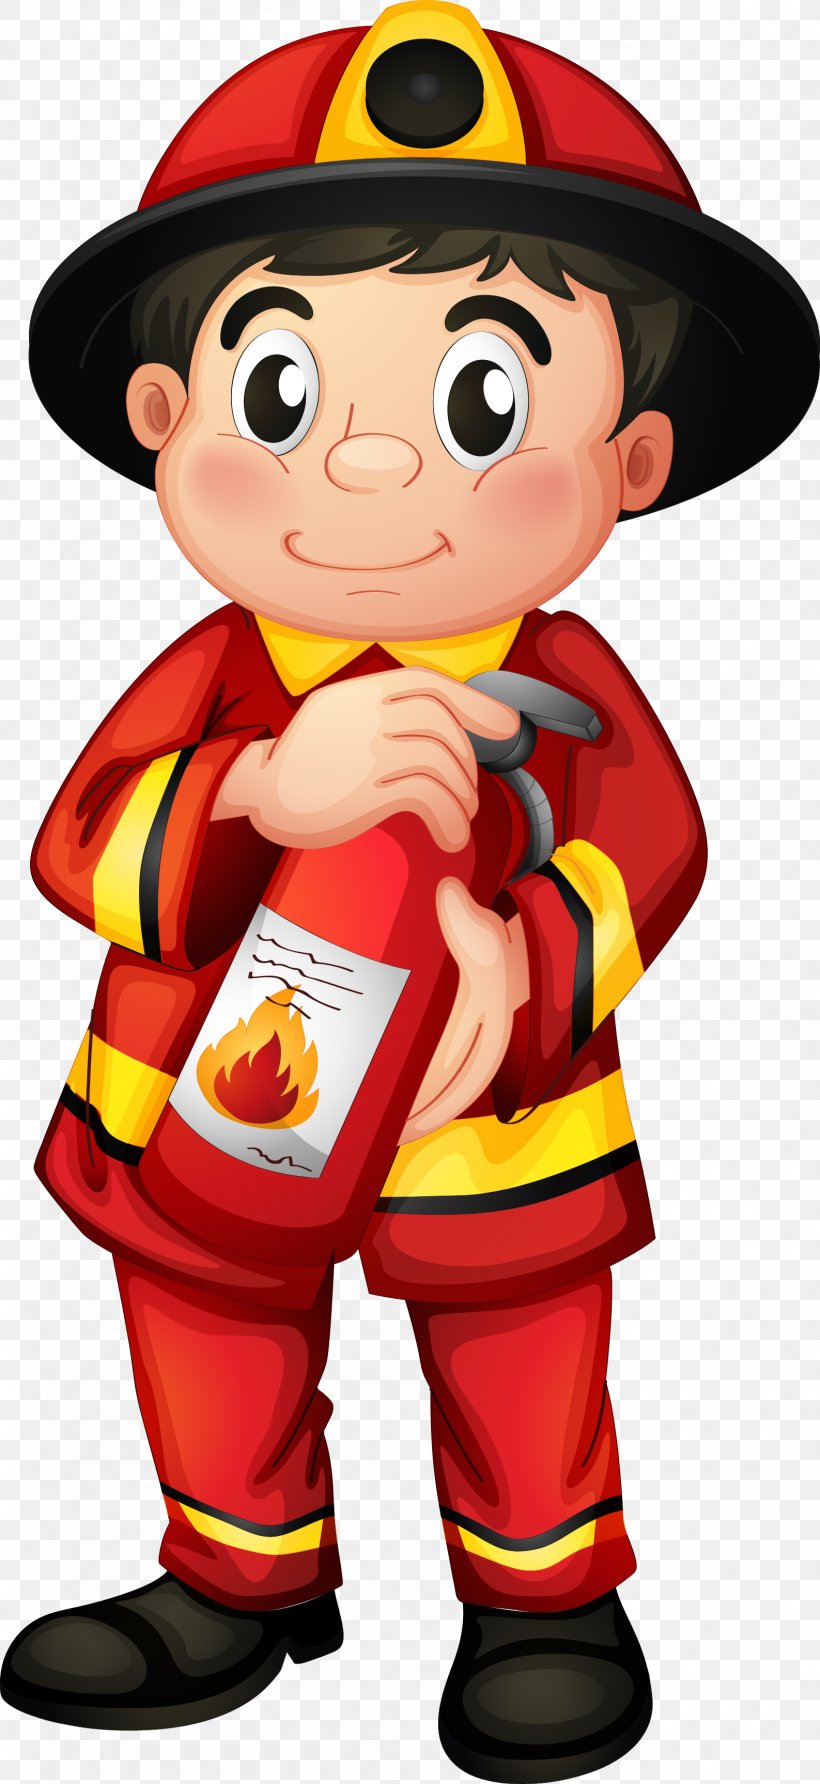 Fire Department Fire Station Firefighter Fire Engine Clip Art, PNG, 1587x3454px, Fire Department, Art, Boy, Cartoon, Fictional Character Download Free